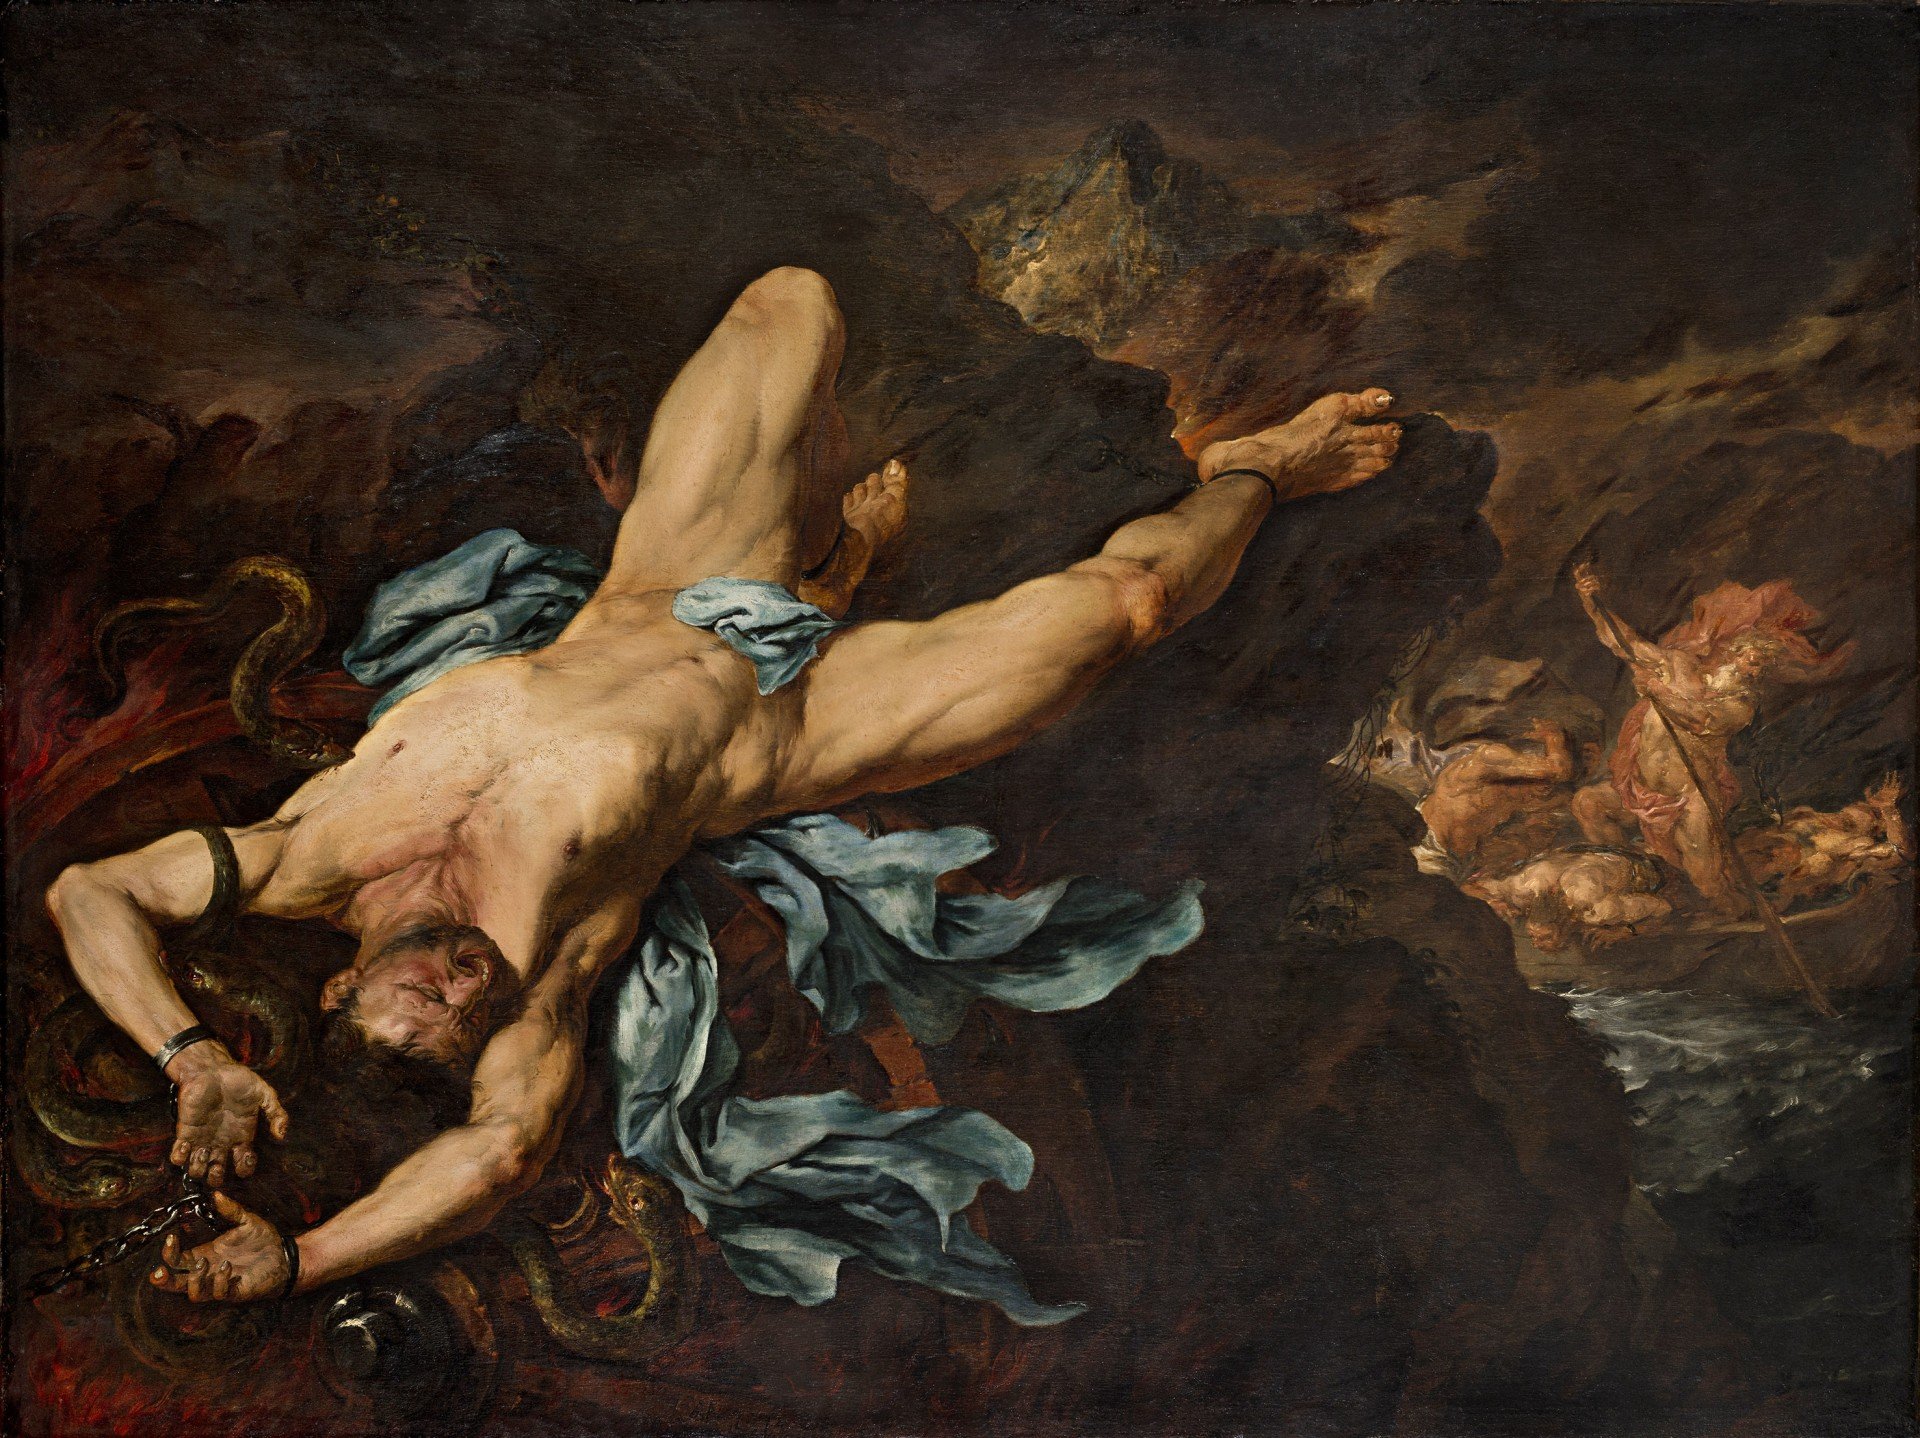 “Ixion”, Giovanni Battista Langetti, Oil on canvas, 193.6 x 258.4 cm, Puerto Rico, Museo de Arte de Ponce